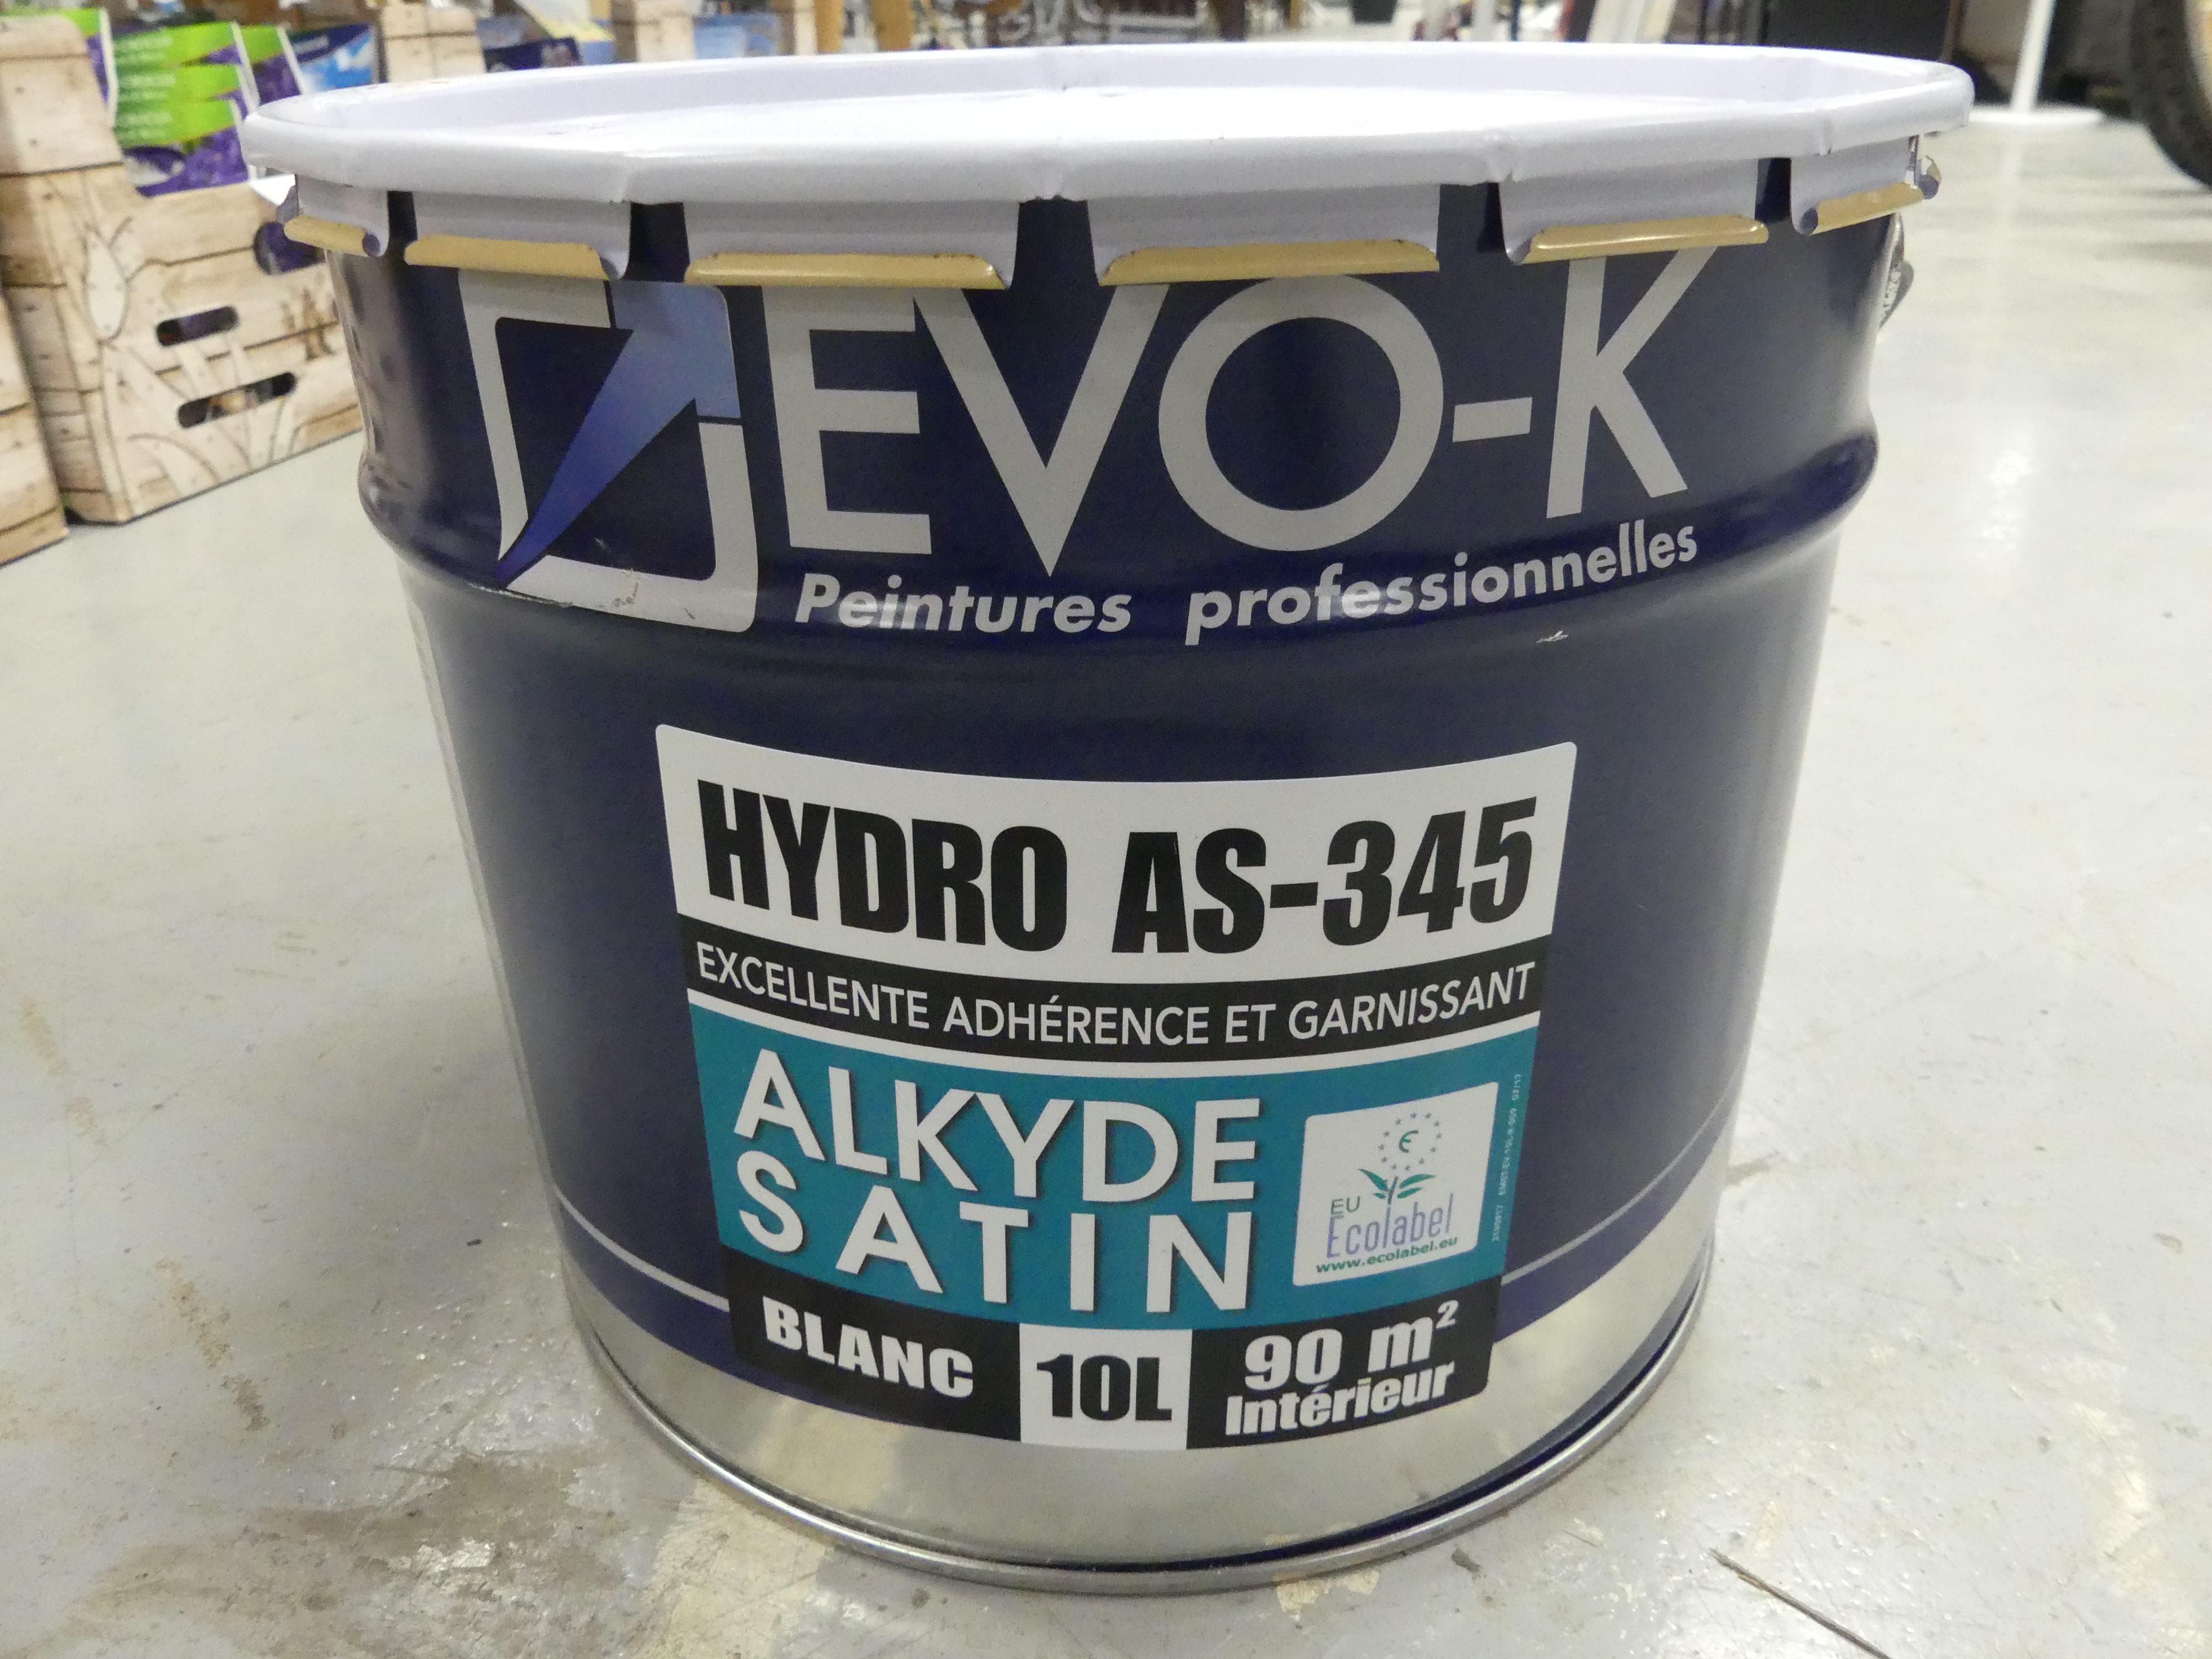 Devo-K verf satijn blank 10 liter Hydro AS-345